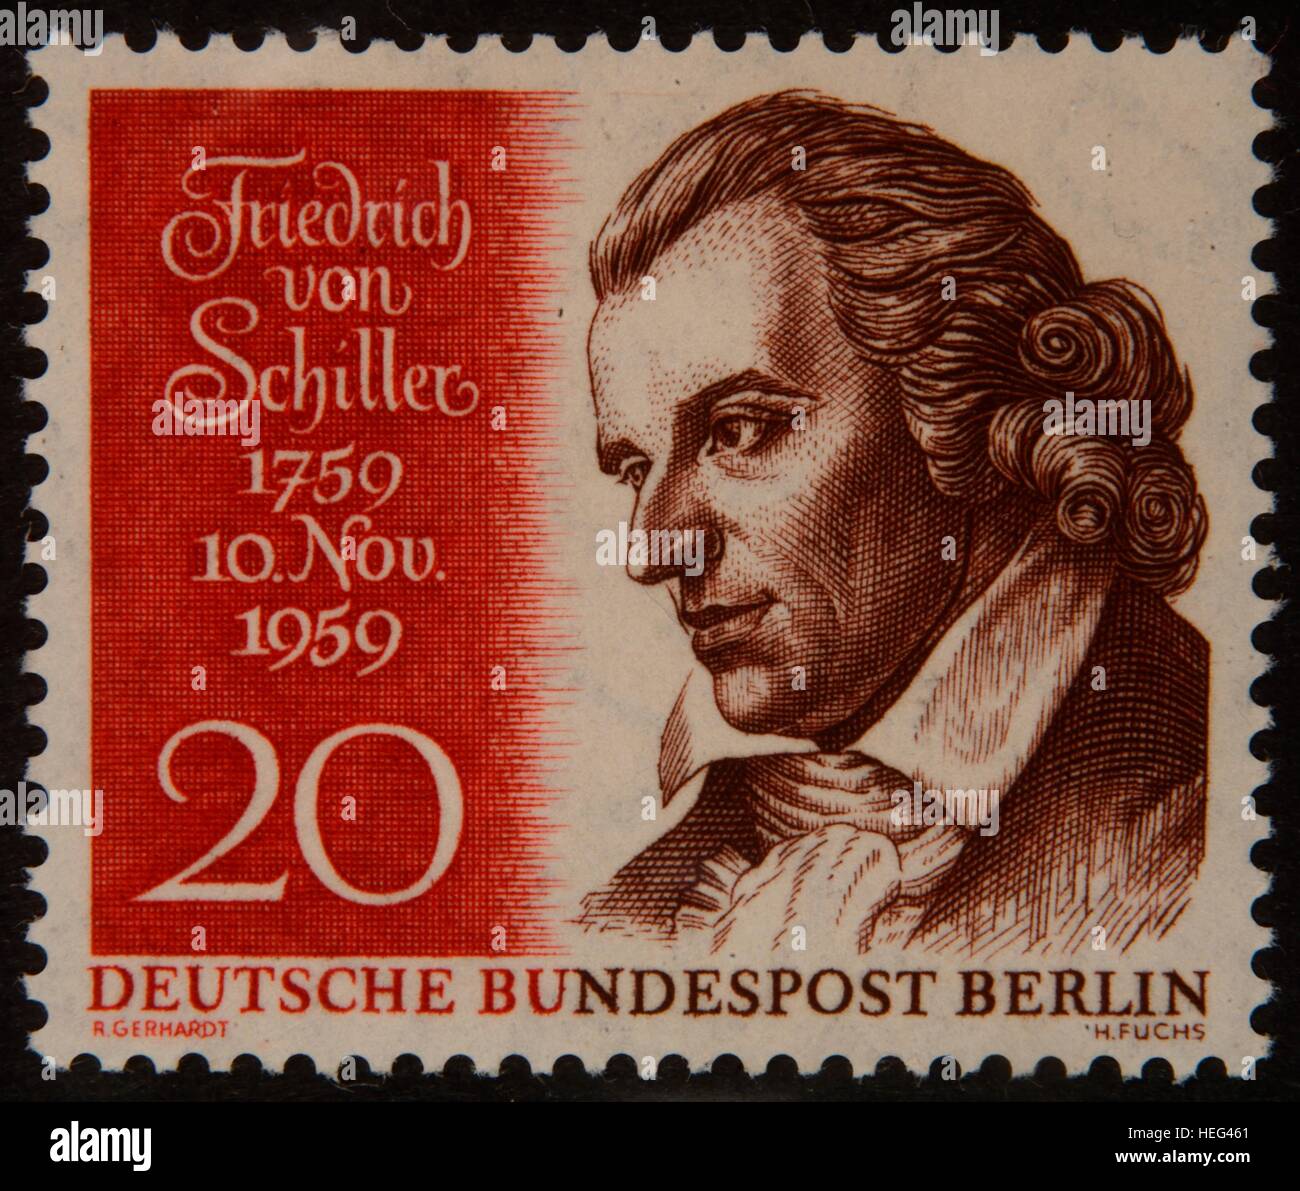 Friedrich von Schiller, poète allemand, portrait sur 1959 timbre Allemand Banque D'Images